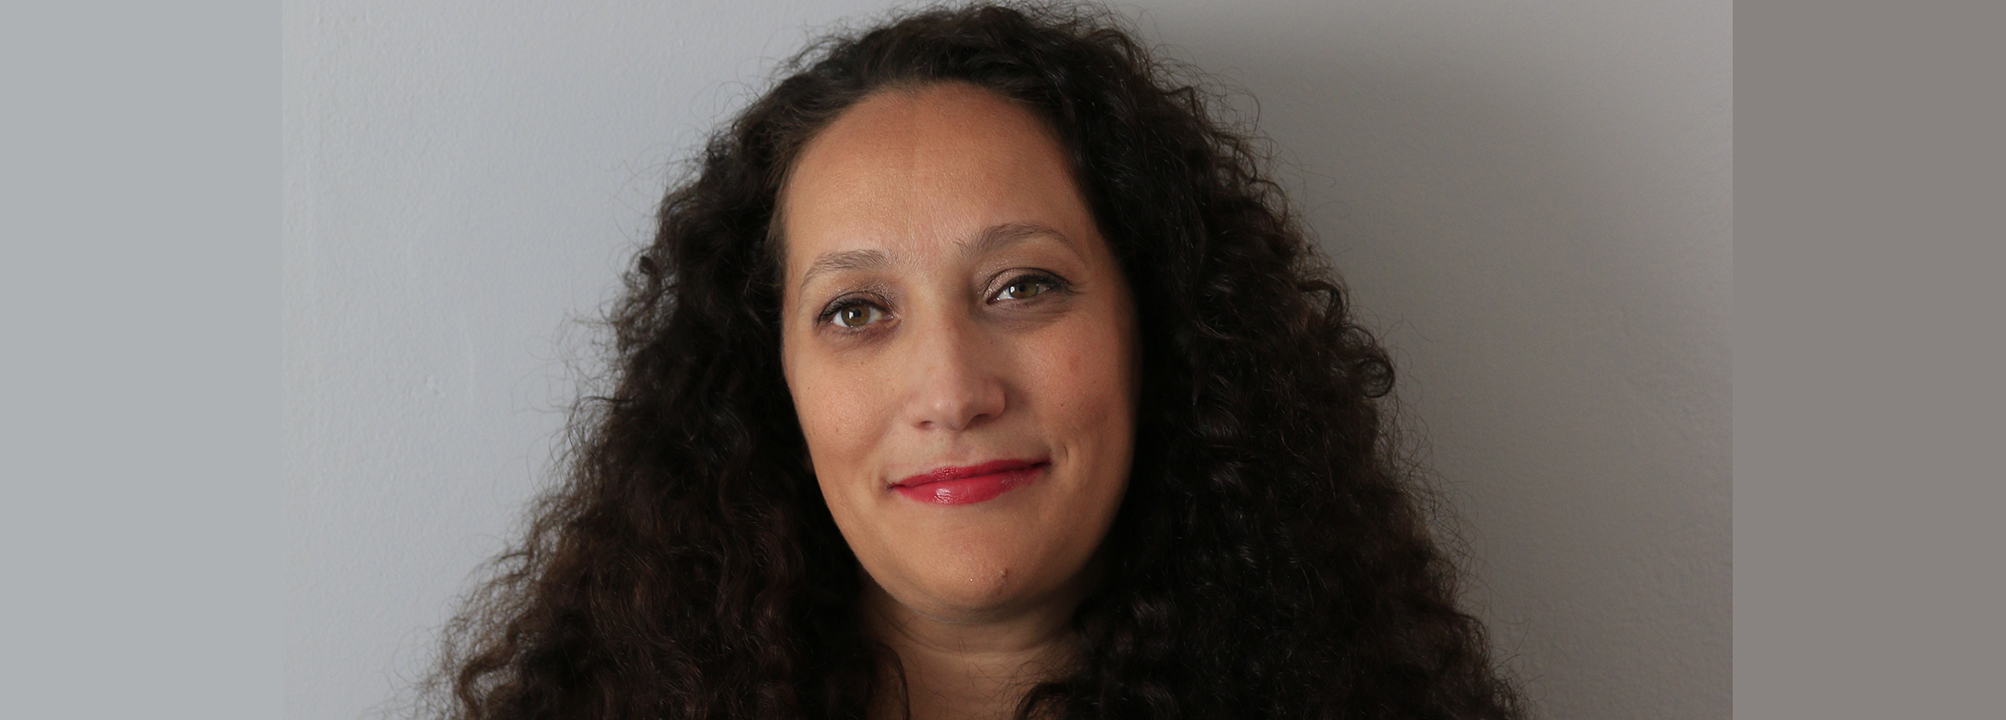 Diana Chafik, projektledare på Funktionsrätt Sverige.